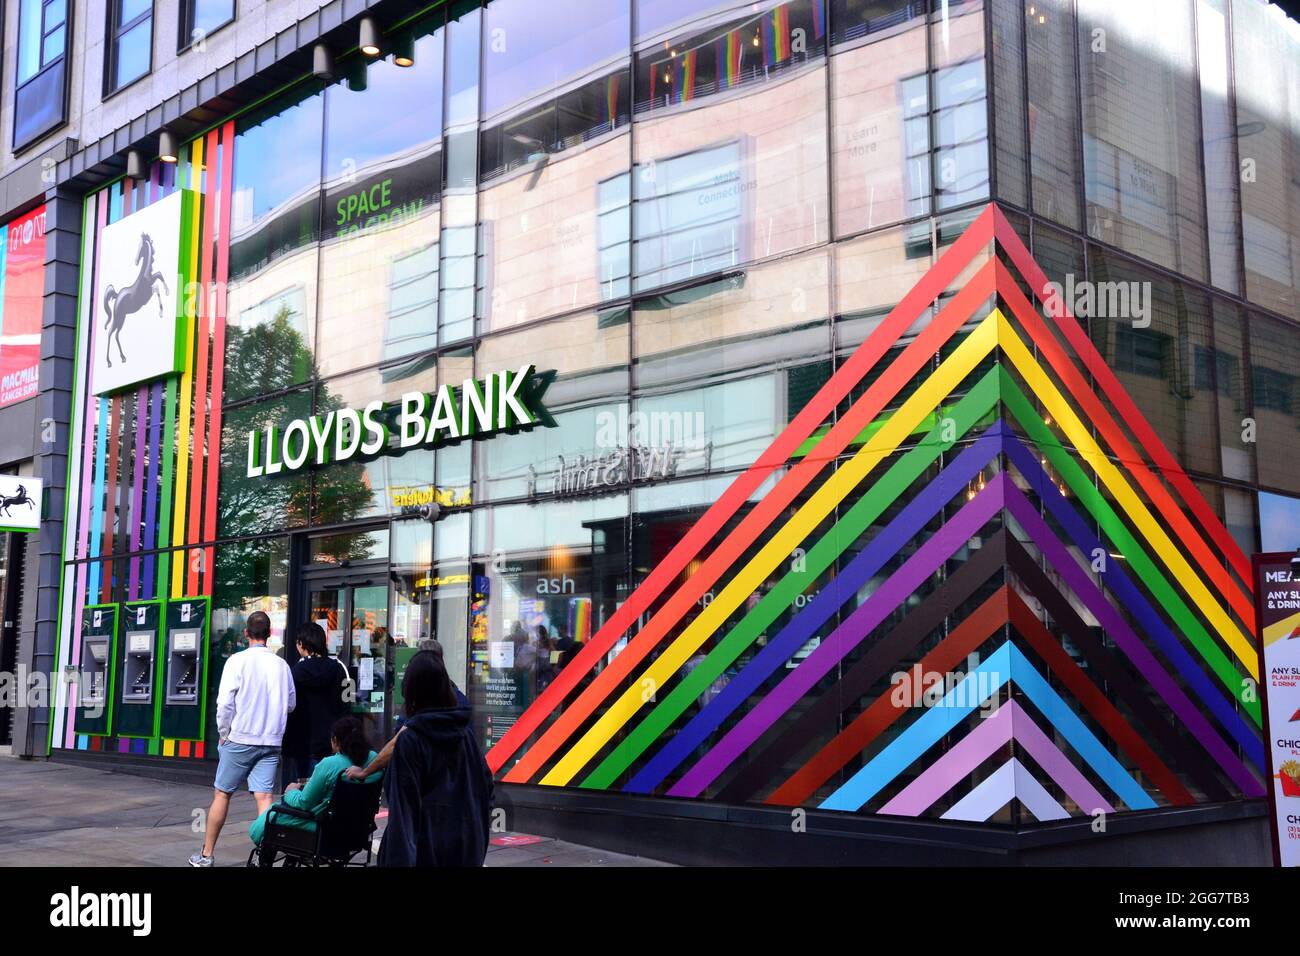 La gente cammina davanti a una filiale della banca Lloyds in Market Street, Manchester, Inghilterra, regno unito, che è decorato in colori arcobaleno per il week-end LGBTQ Pride di Manchester. Foto Stock